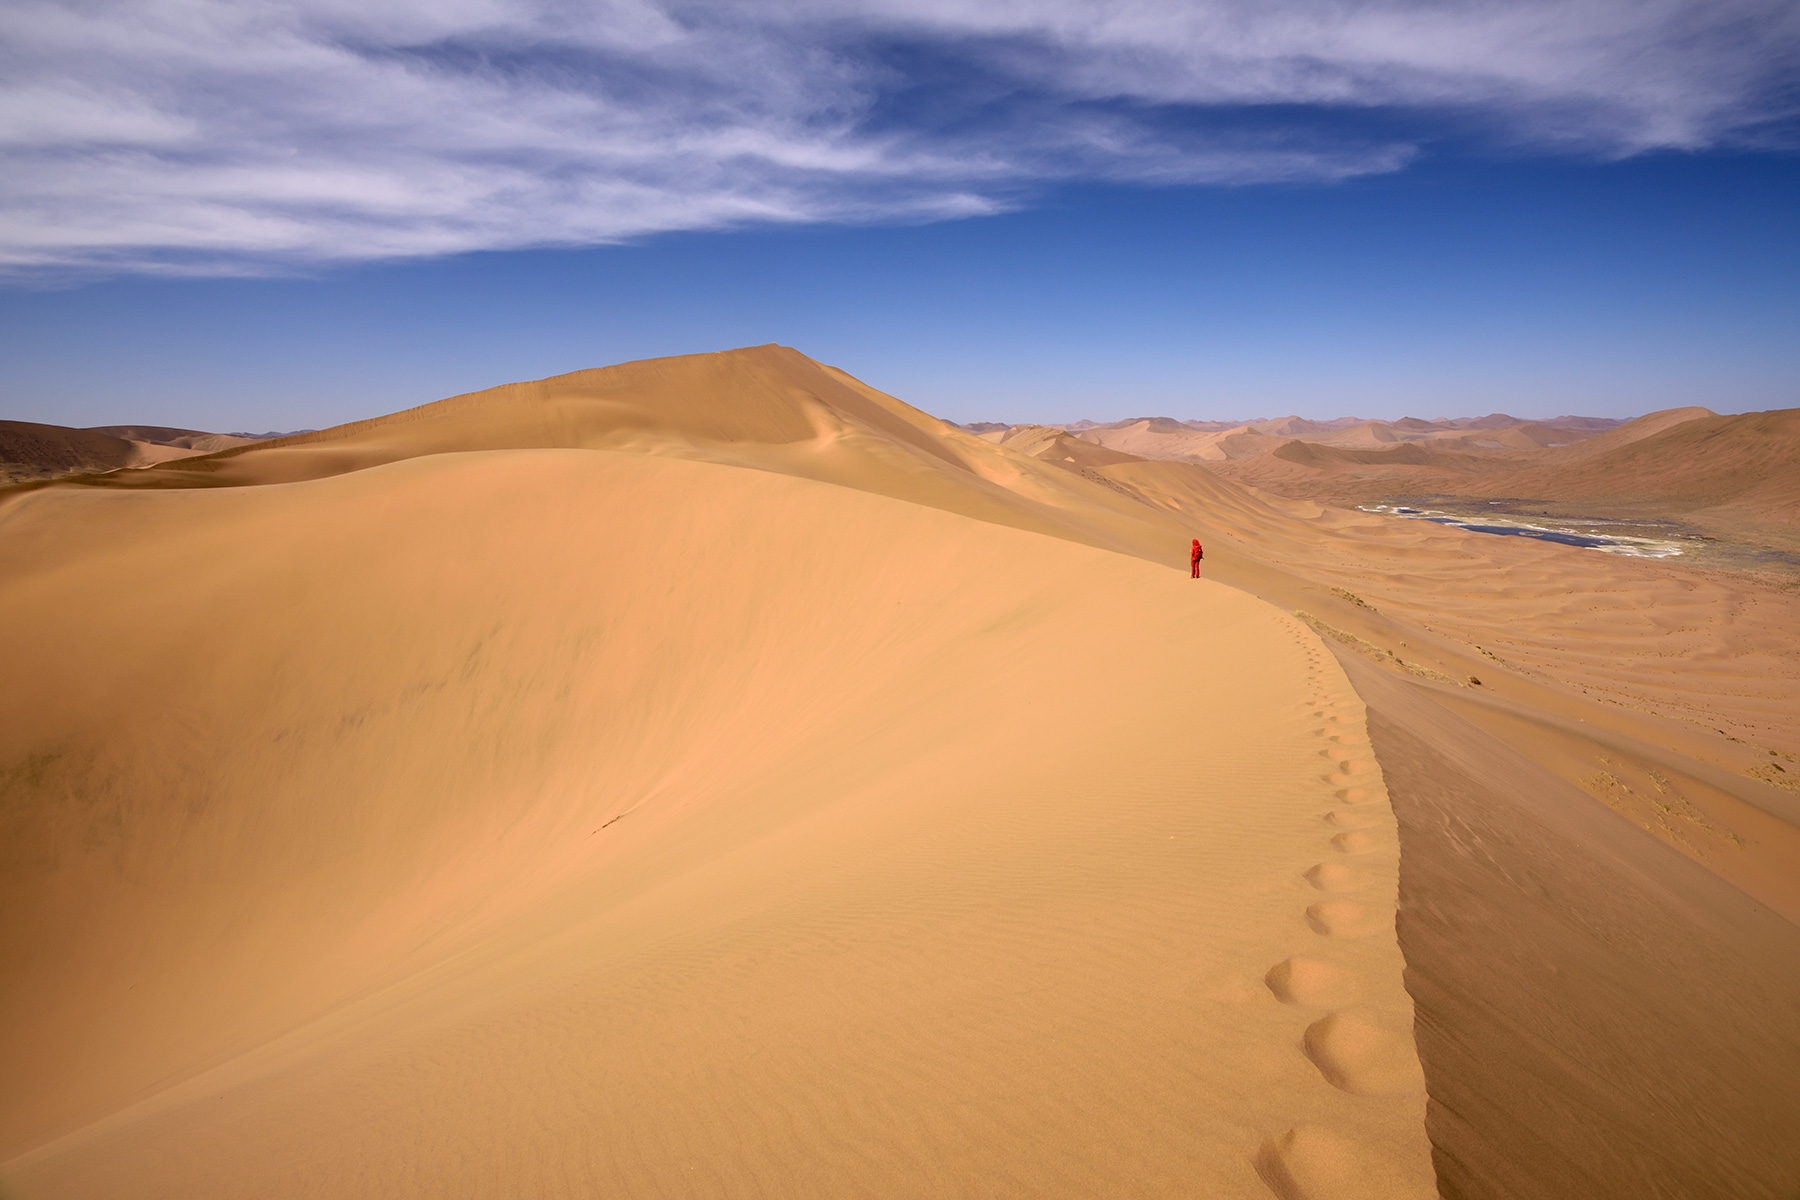 Désert du Badain Jaran (Chine, Mongolie Intérieure) - Vue générale d'un enchaînement de dunes avec randonneuse sur la crête. Vallée avec lac salé à droite.